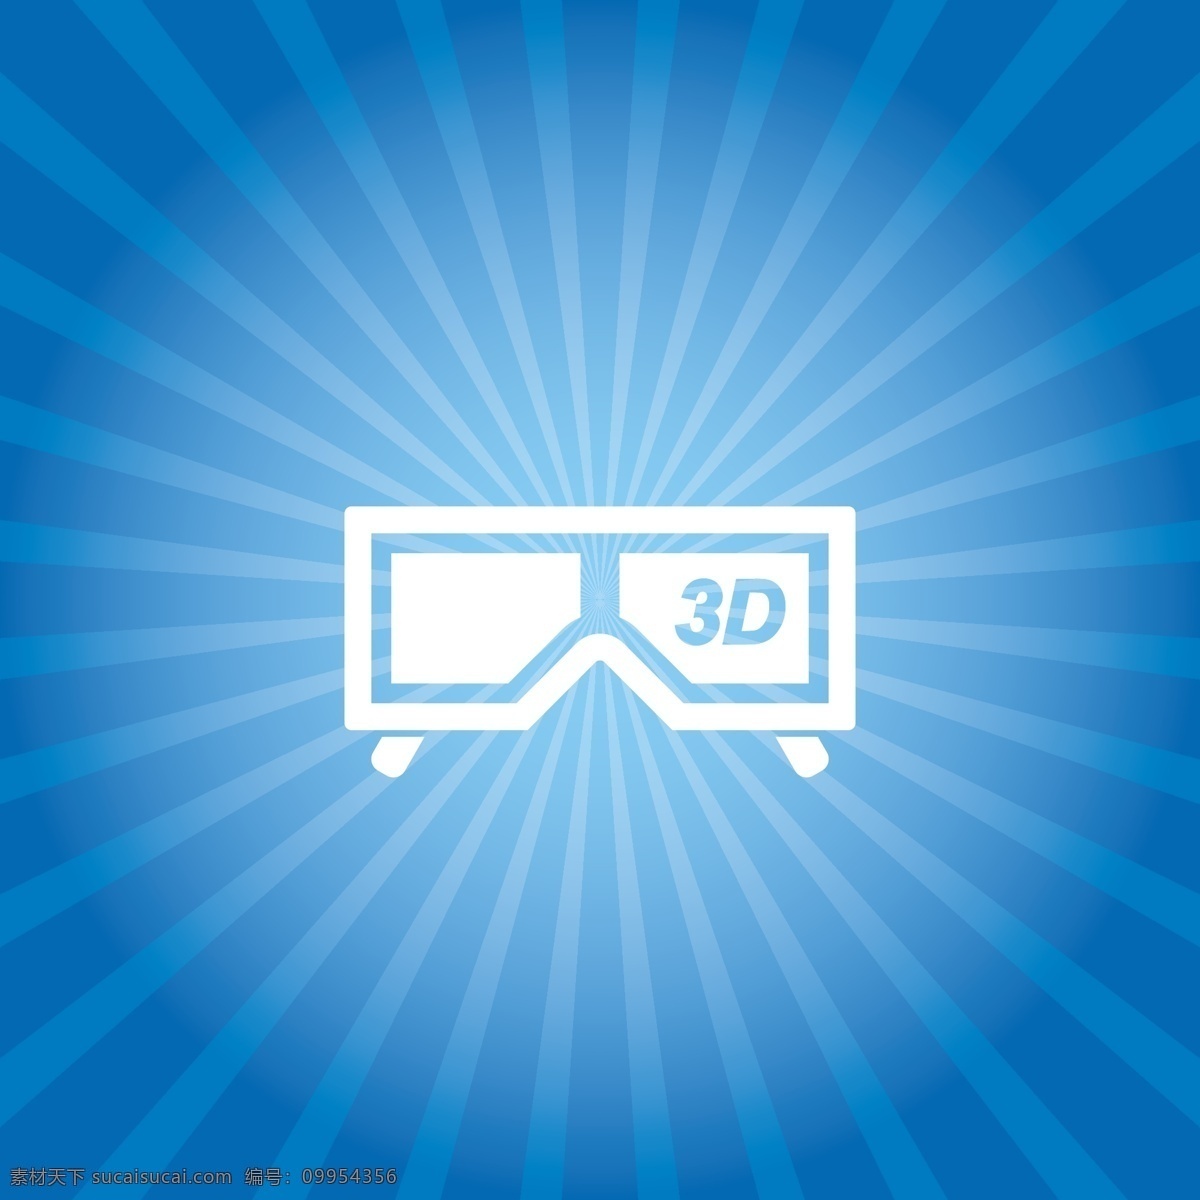 3d眼镜背景 3d 眼镜 背景 模板下载 3d眼镜 蓝色 电影 影音娱乐 生活百科 矢量素材